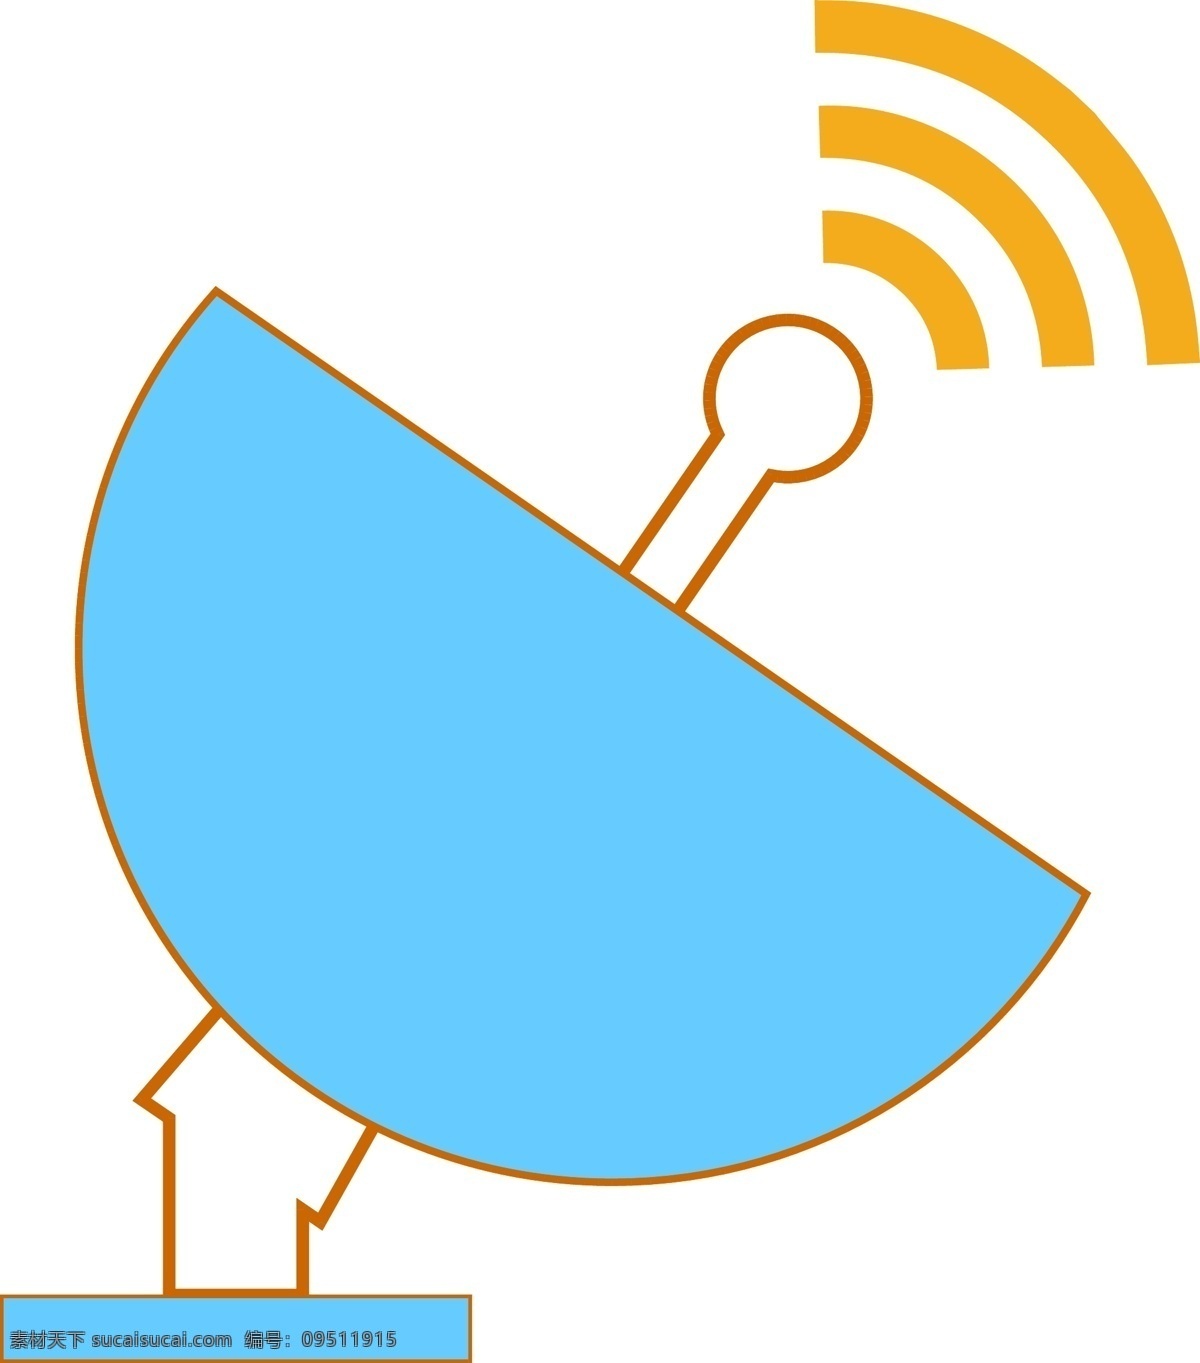 矢量 卫星 发射 信号 接收 天气监测 通讯 wifi 无线网络 网络覆盖 信号好 网络手机 流量 发射信号 信号塔